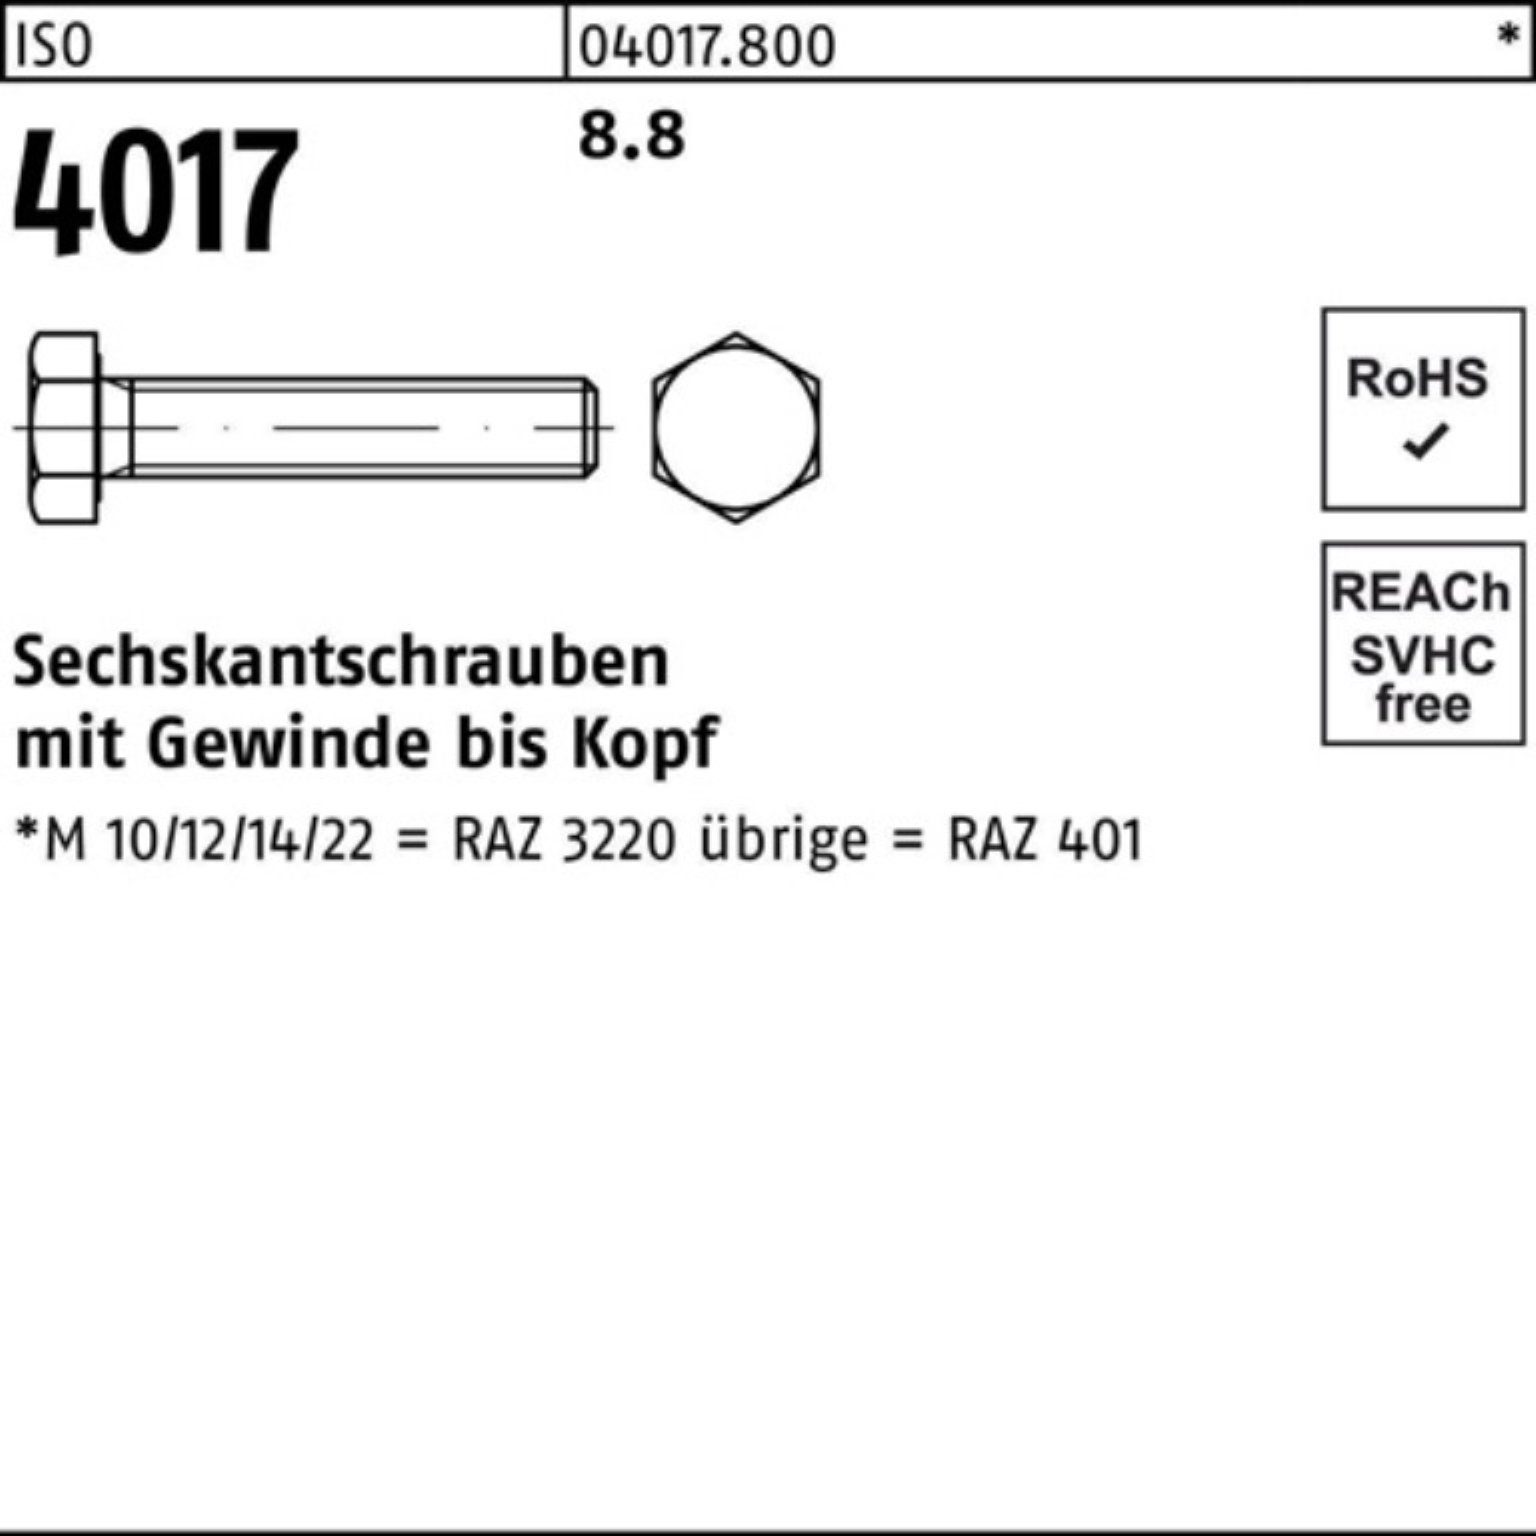 90 100er VG ISO Stück Bufab Sechskantschraube 1 Pack ISO 8.8 4017 M42x Sechskantschraube 4017